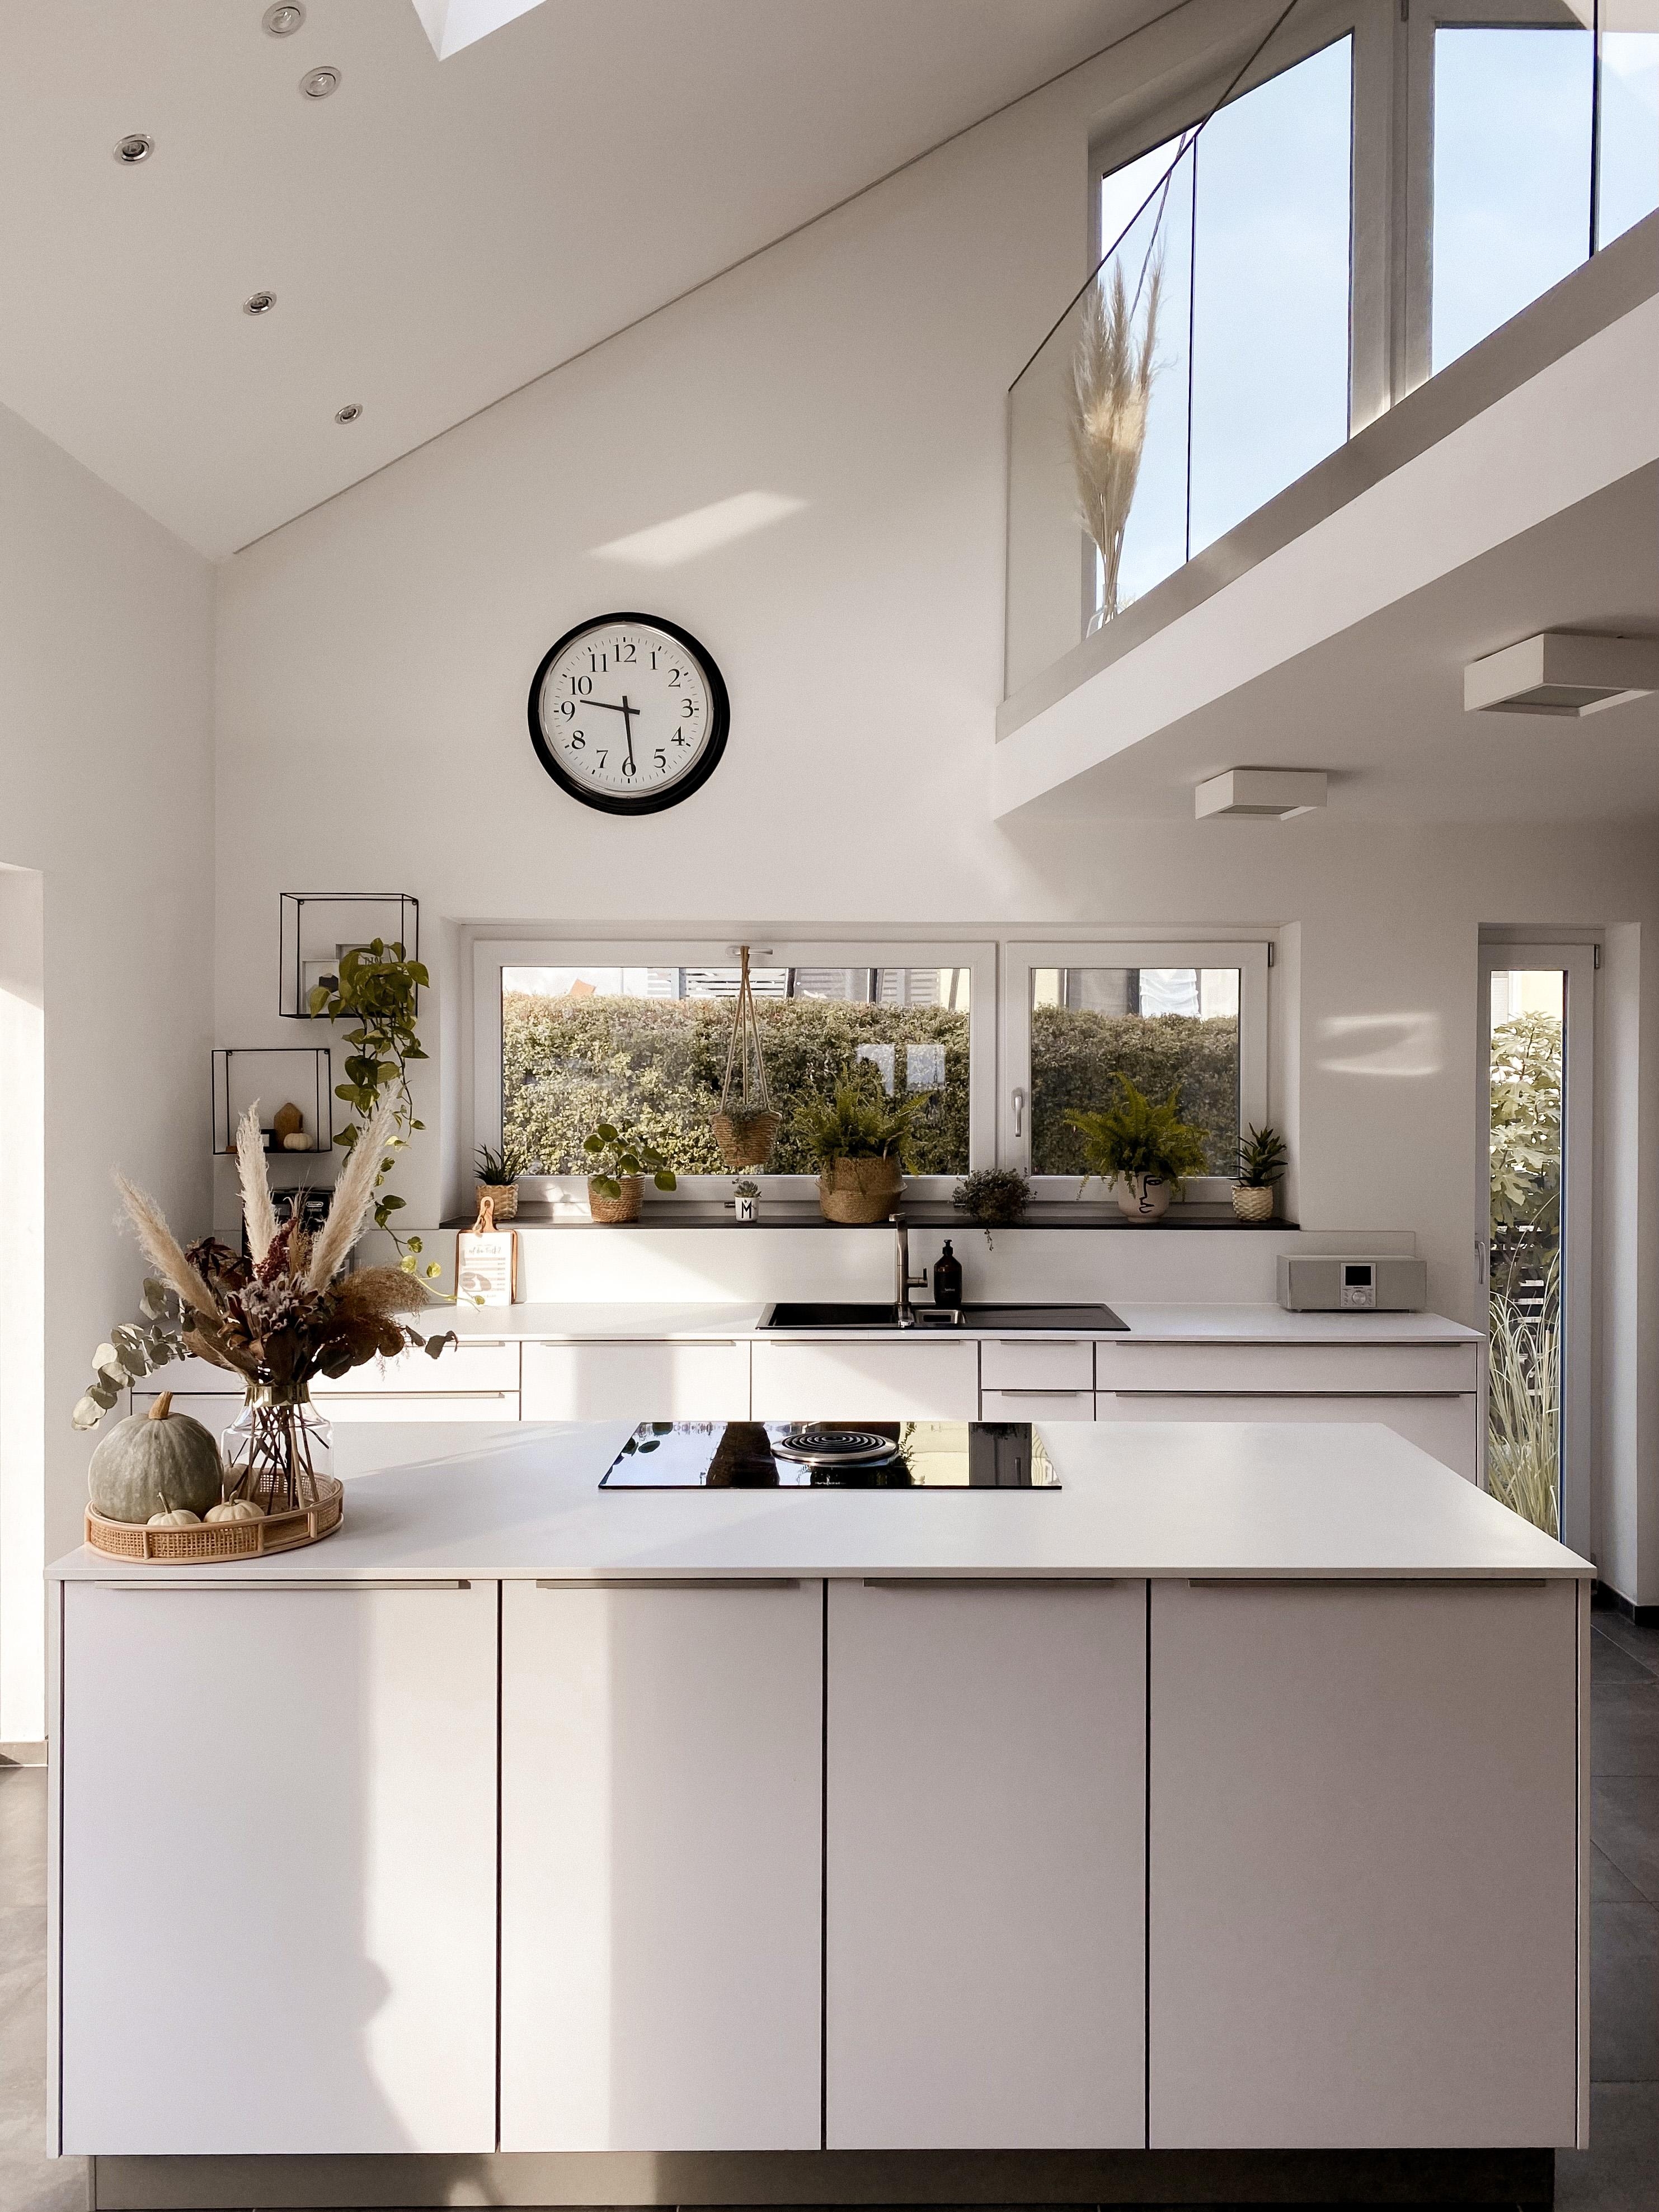 K Ü C H E - Aus- und Einblick in unsere Küche #kitchen #kitchendesign 